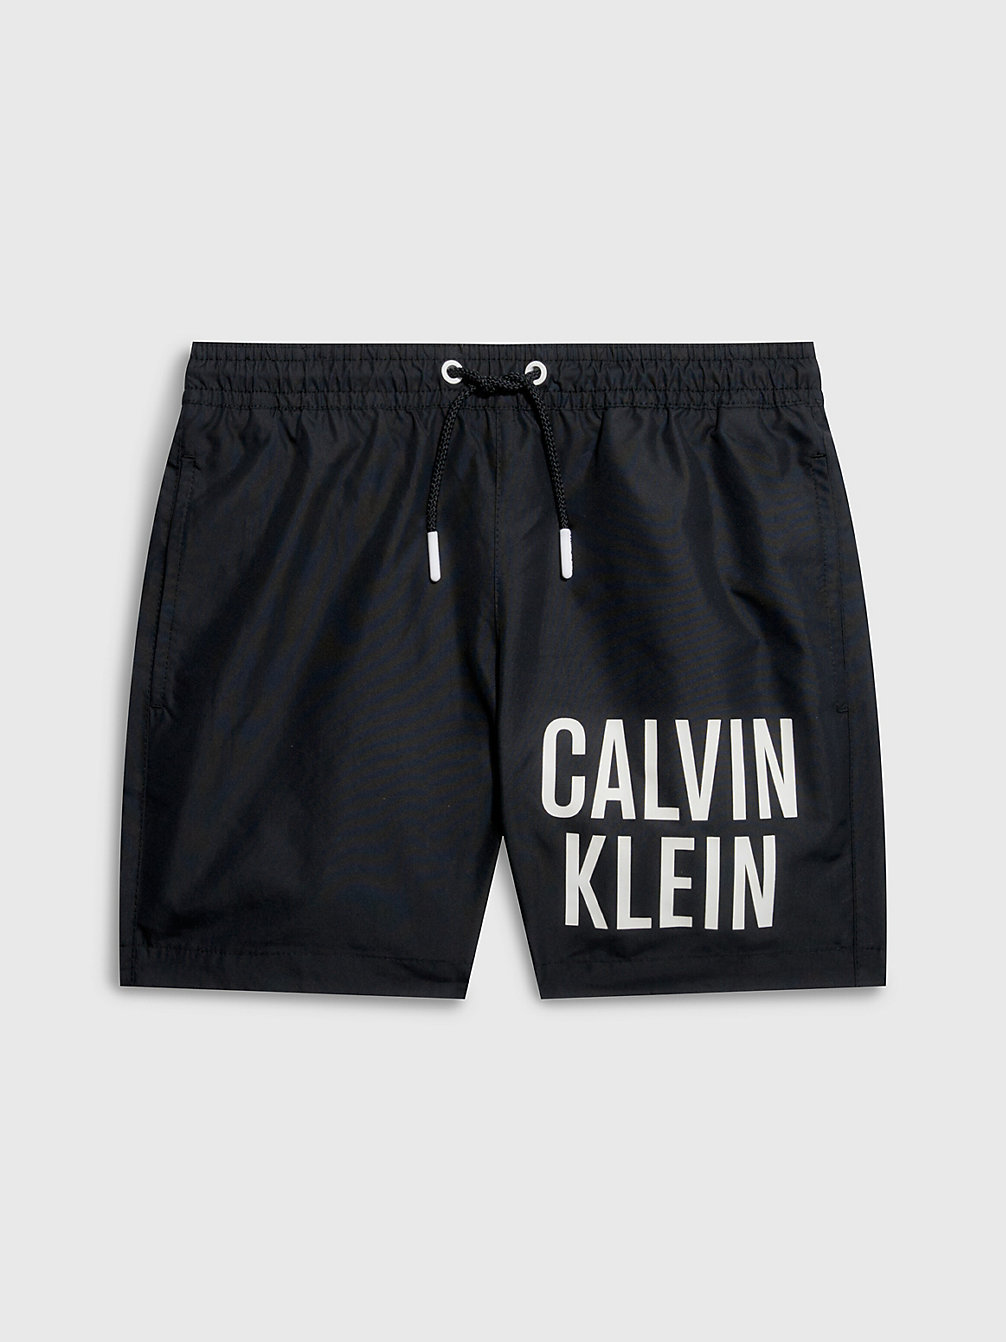 PVH BLACK > Zwemboxer Voor Jongens - Intense Power > undefined boys - Calvin Klein